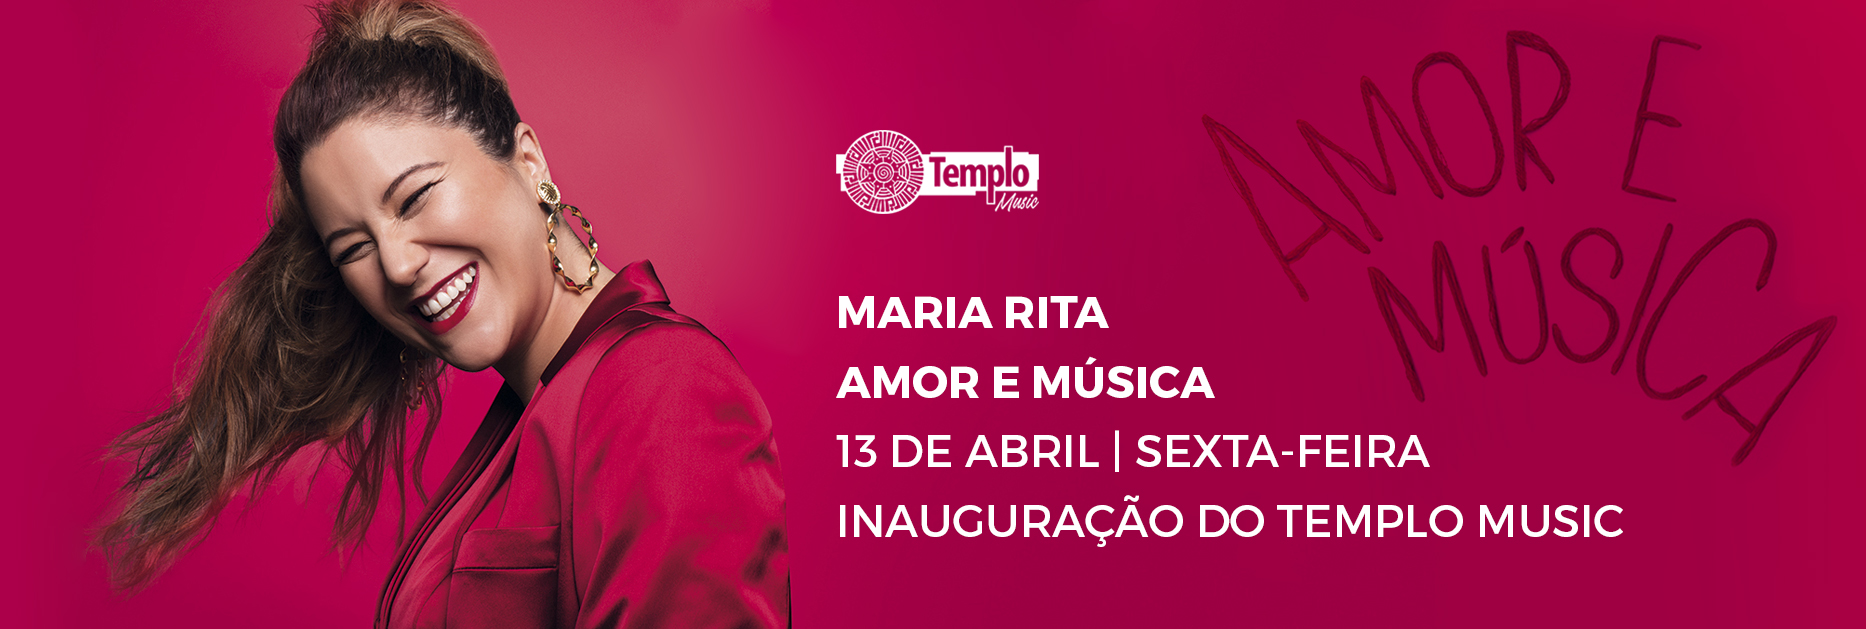 Maria Rita inaugura a Templo Music na Mooca paulistana